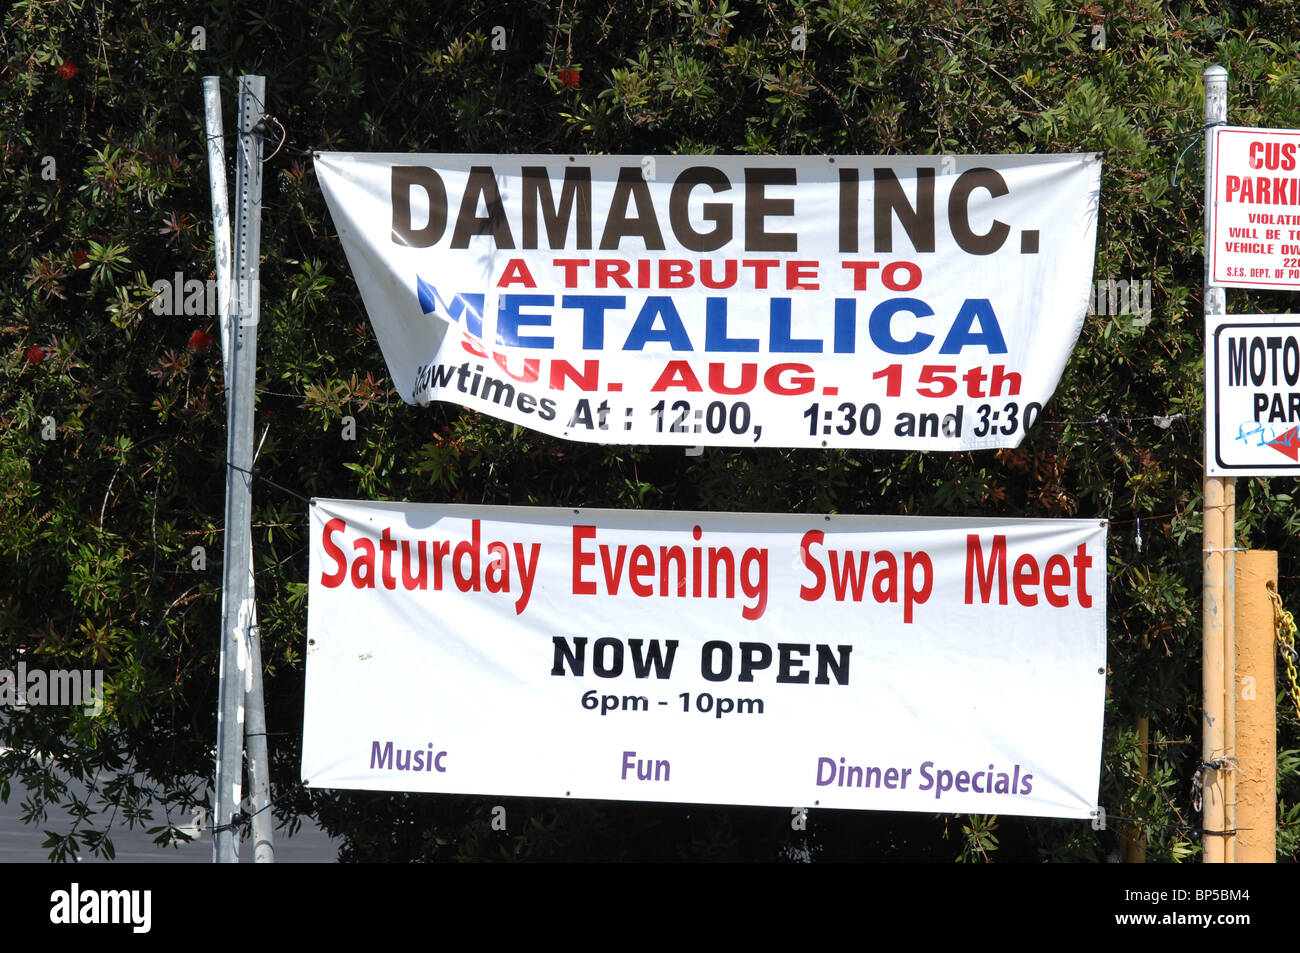 Eine Tauschbörse Veranstaltung zieht Käufer durch die Veranstaltung einer Tribute-Band zu Rocker Metallica. Stockfoto